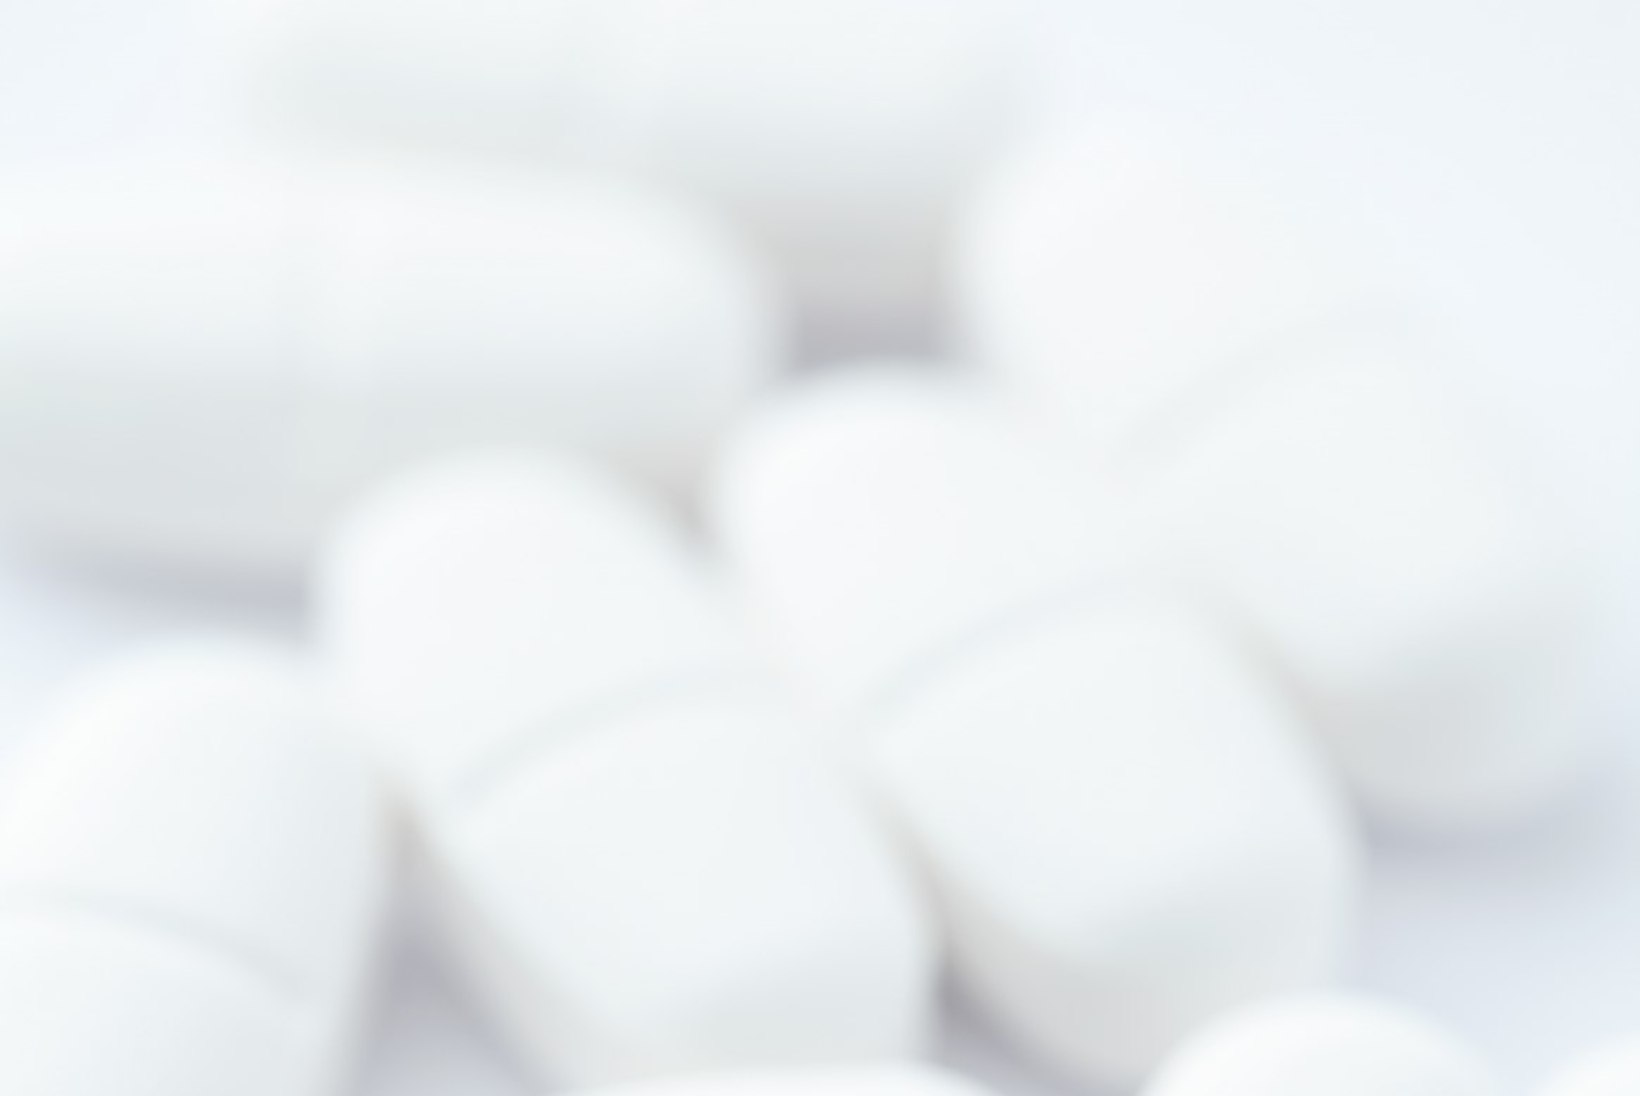 Ole ettevaatlik - ibuprofeeniga liialdamine võib suurendada riski infarktiks ja insuldiks